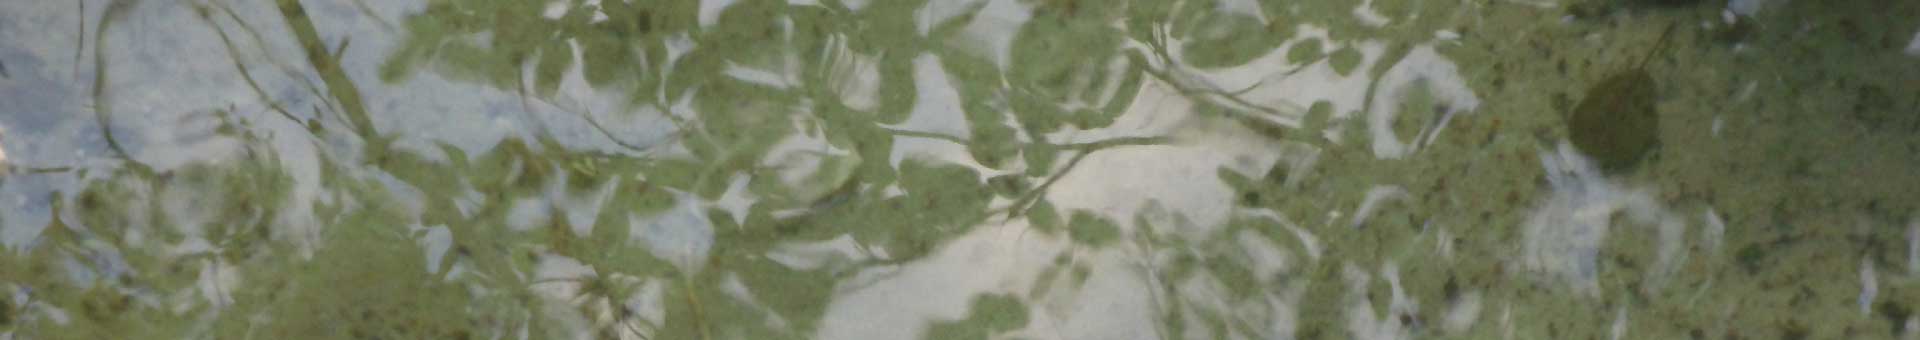 Himmel spiegelt sich zwischen im Wasser schwimmender Blätter. Symbolbild für Hypnosetherapie.